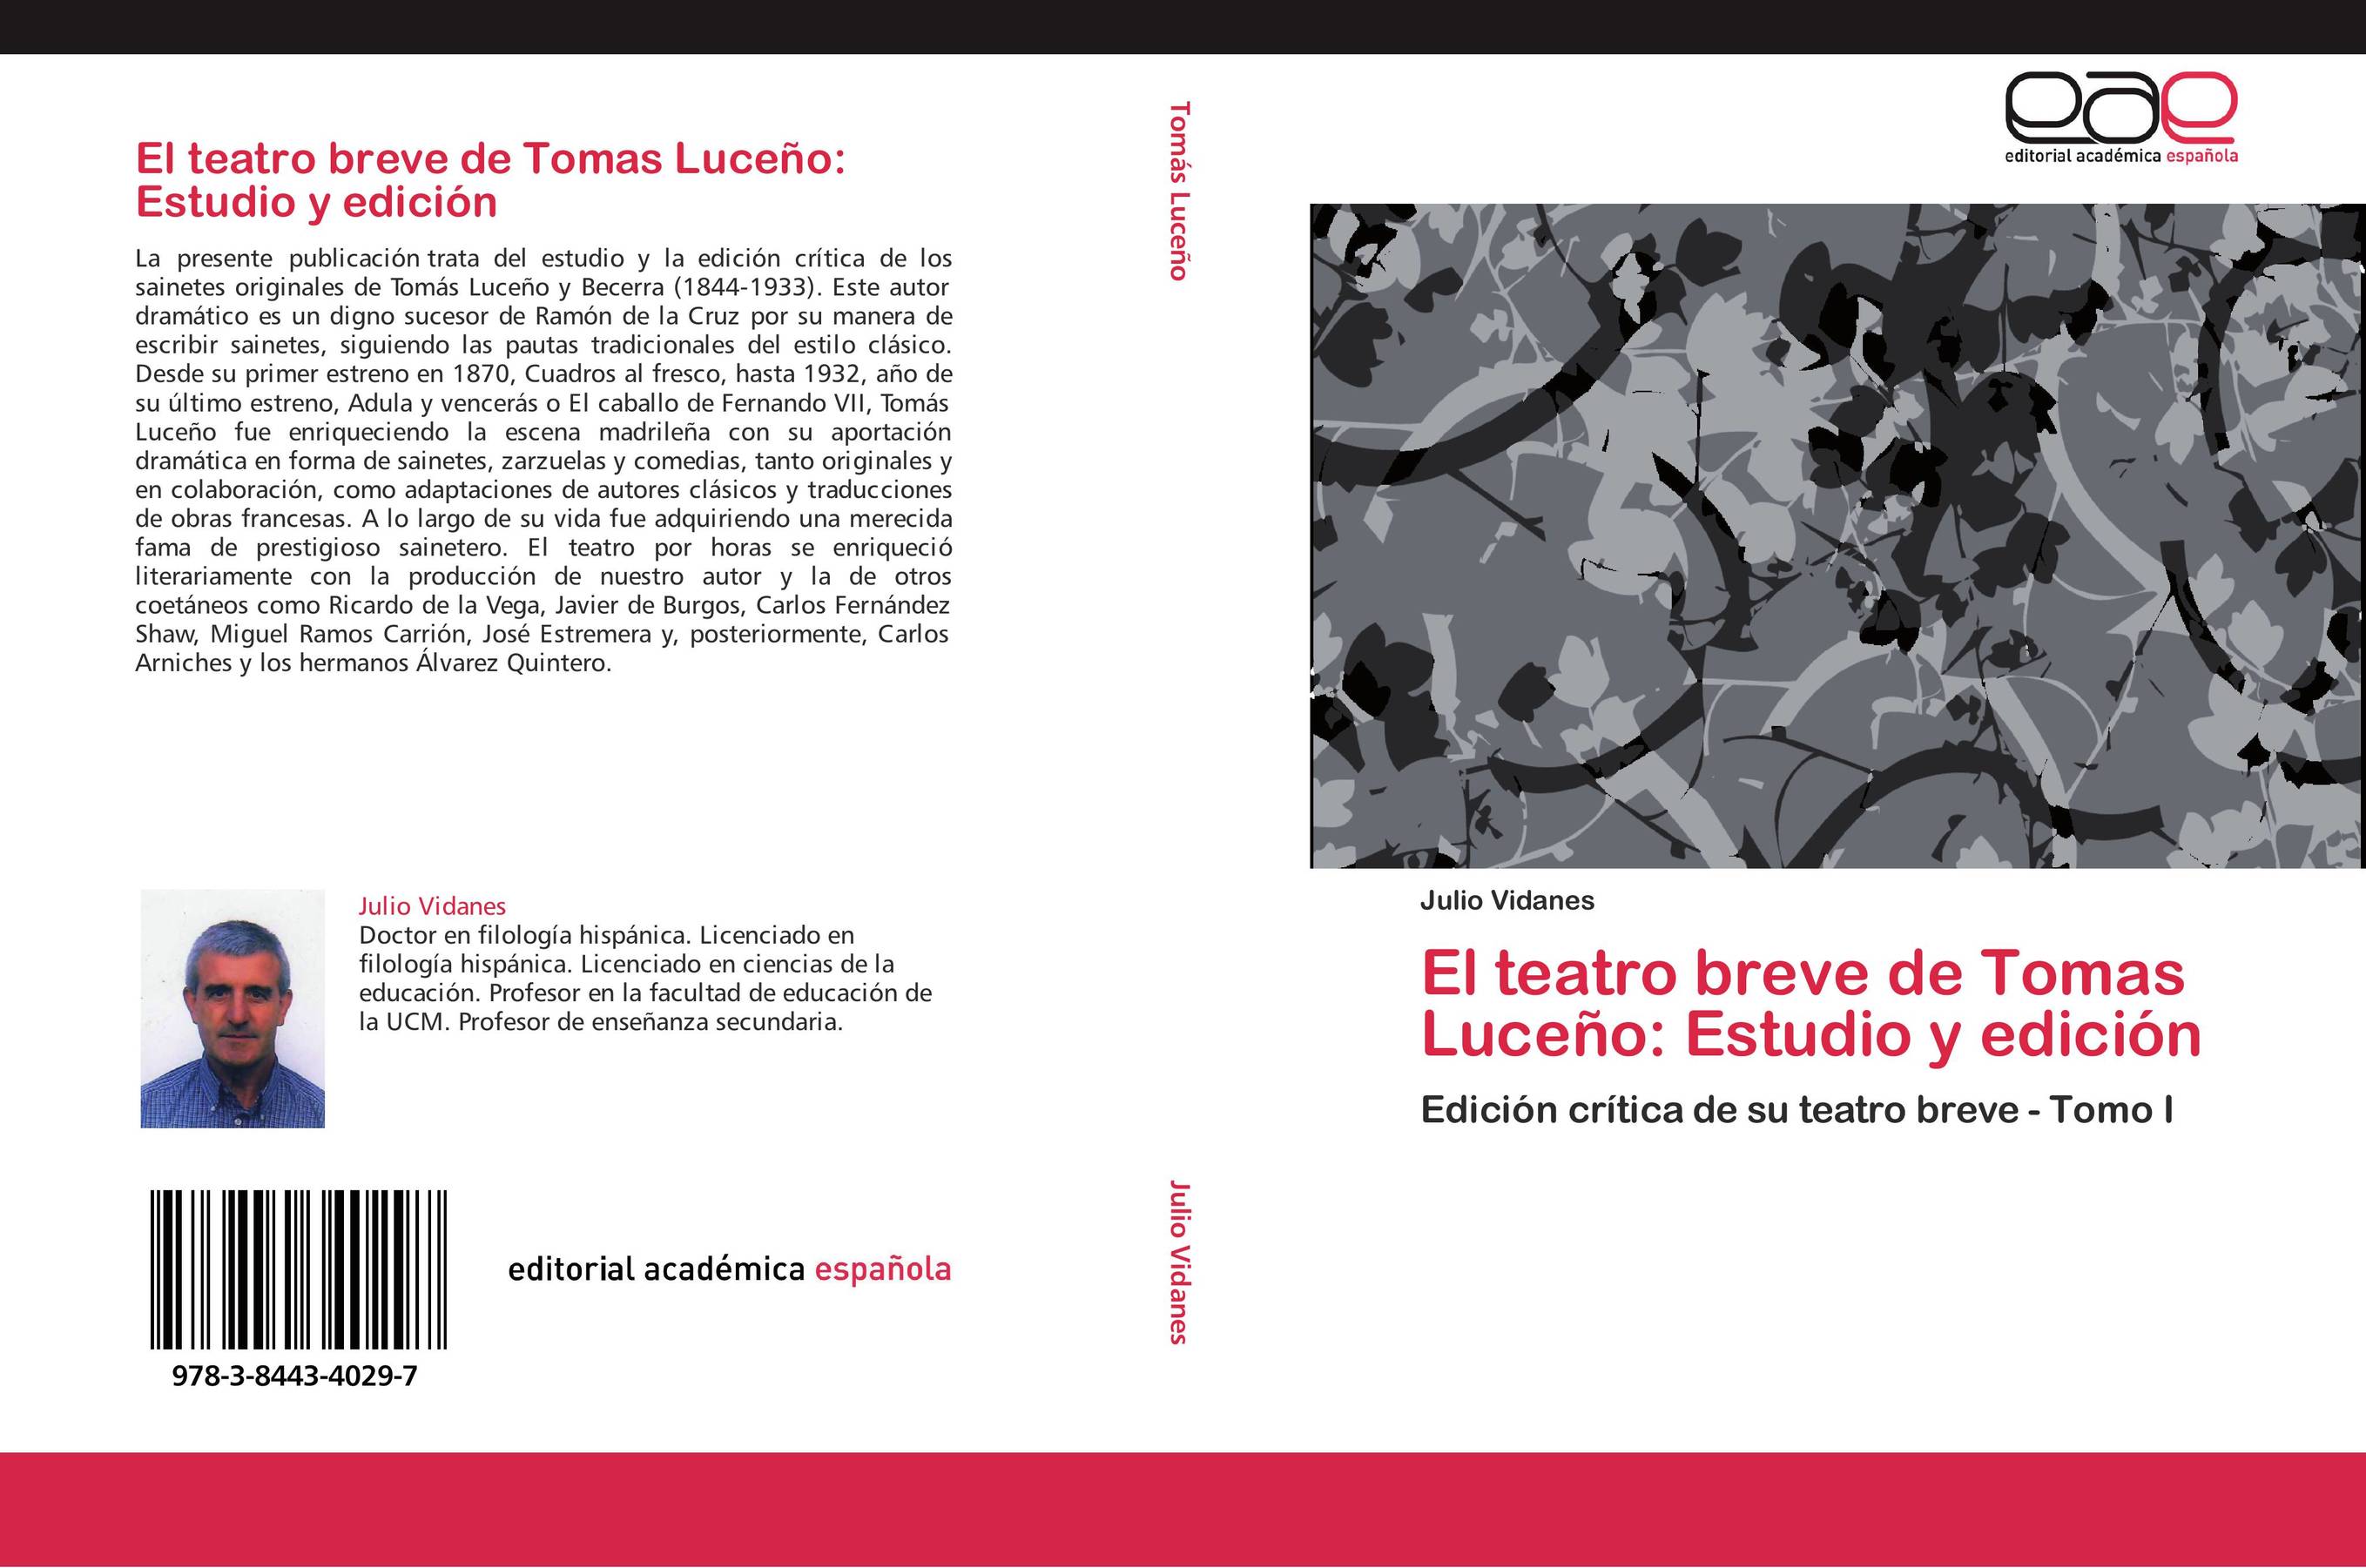 El teatro breve de Tomas Luceño: Estudio y edición